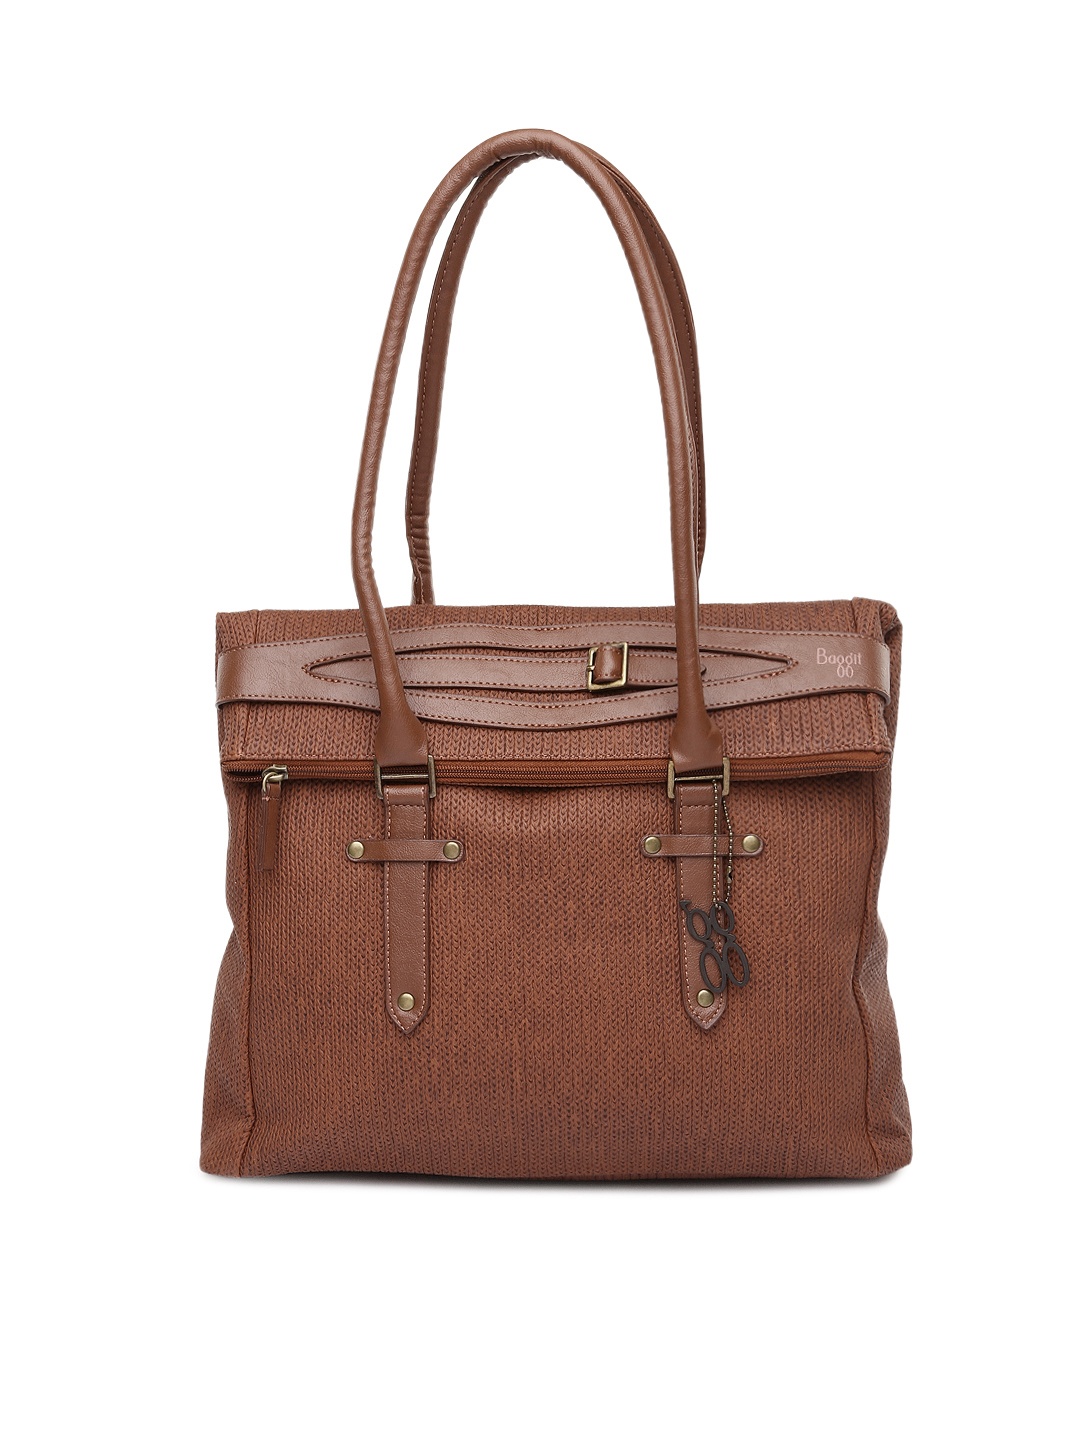 Myntra Baggit Brown Shoulder Bag 721138 | Buy Myntra Baggit Handbags at best price online. All ...